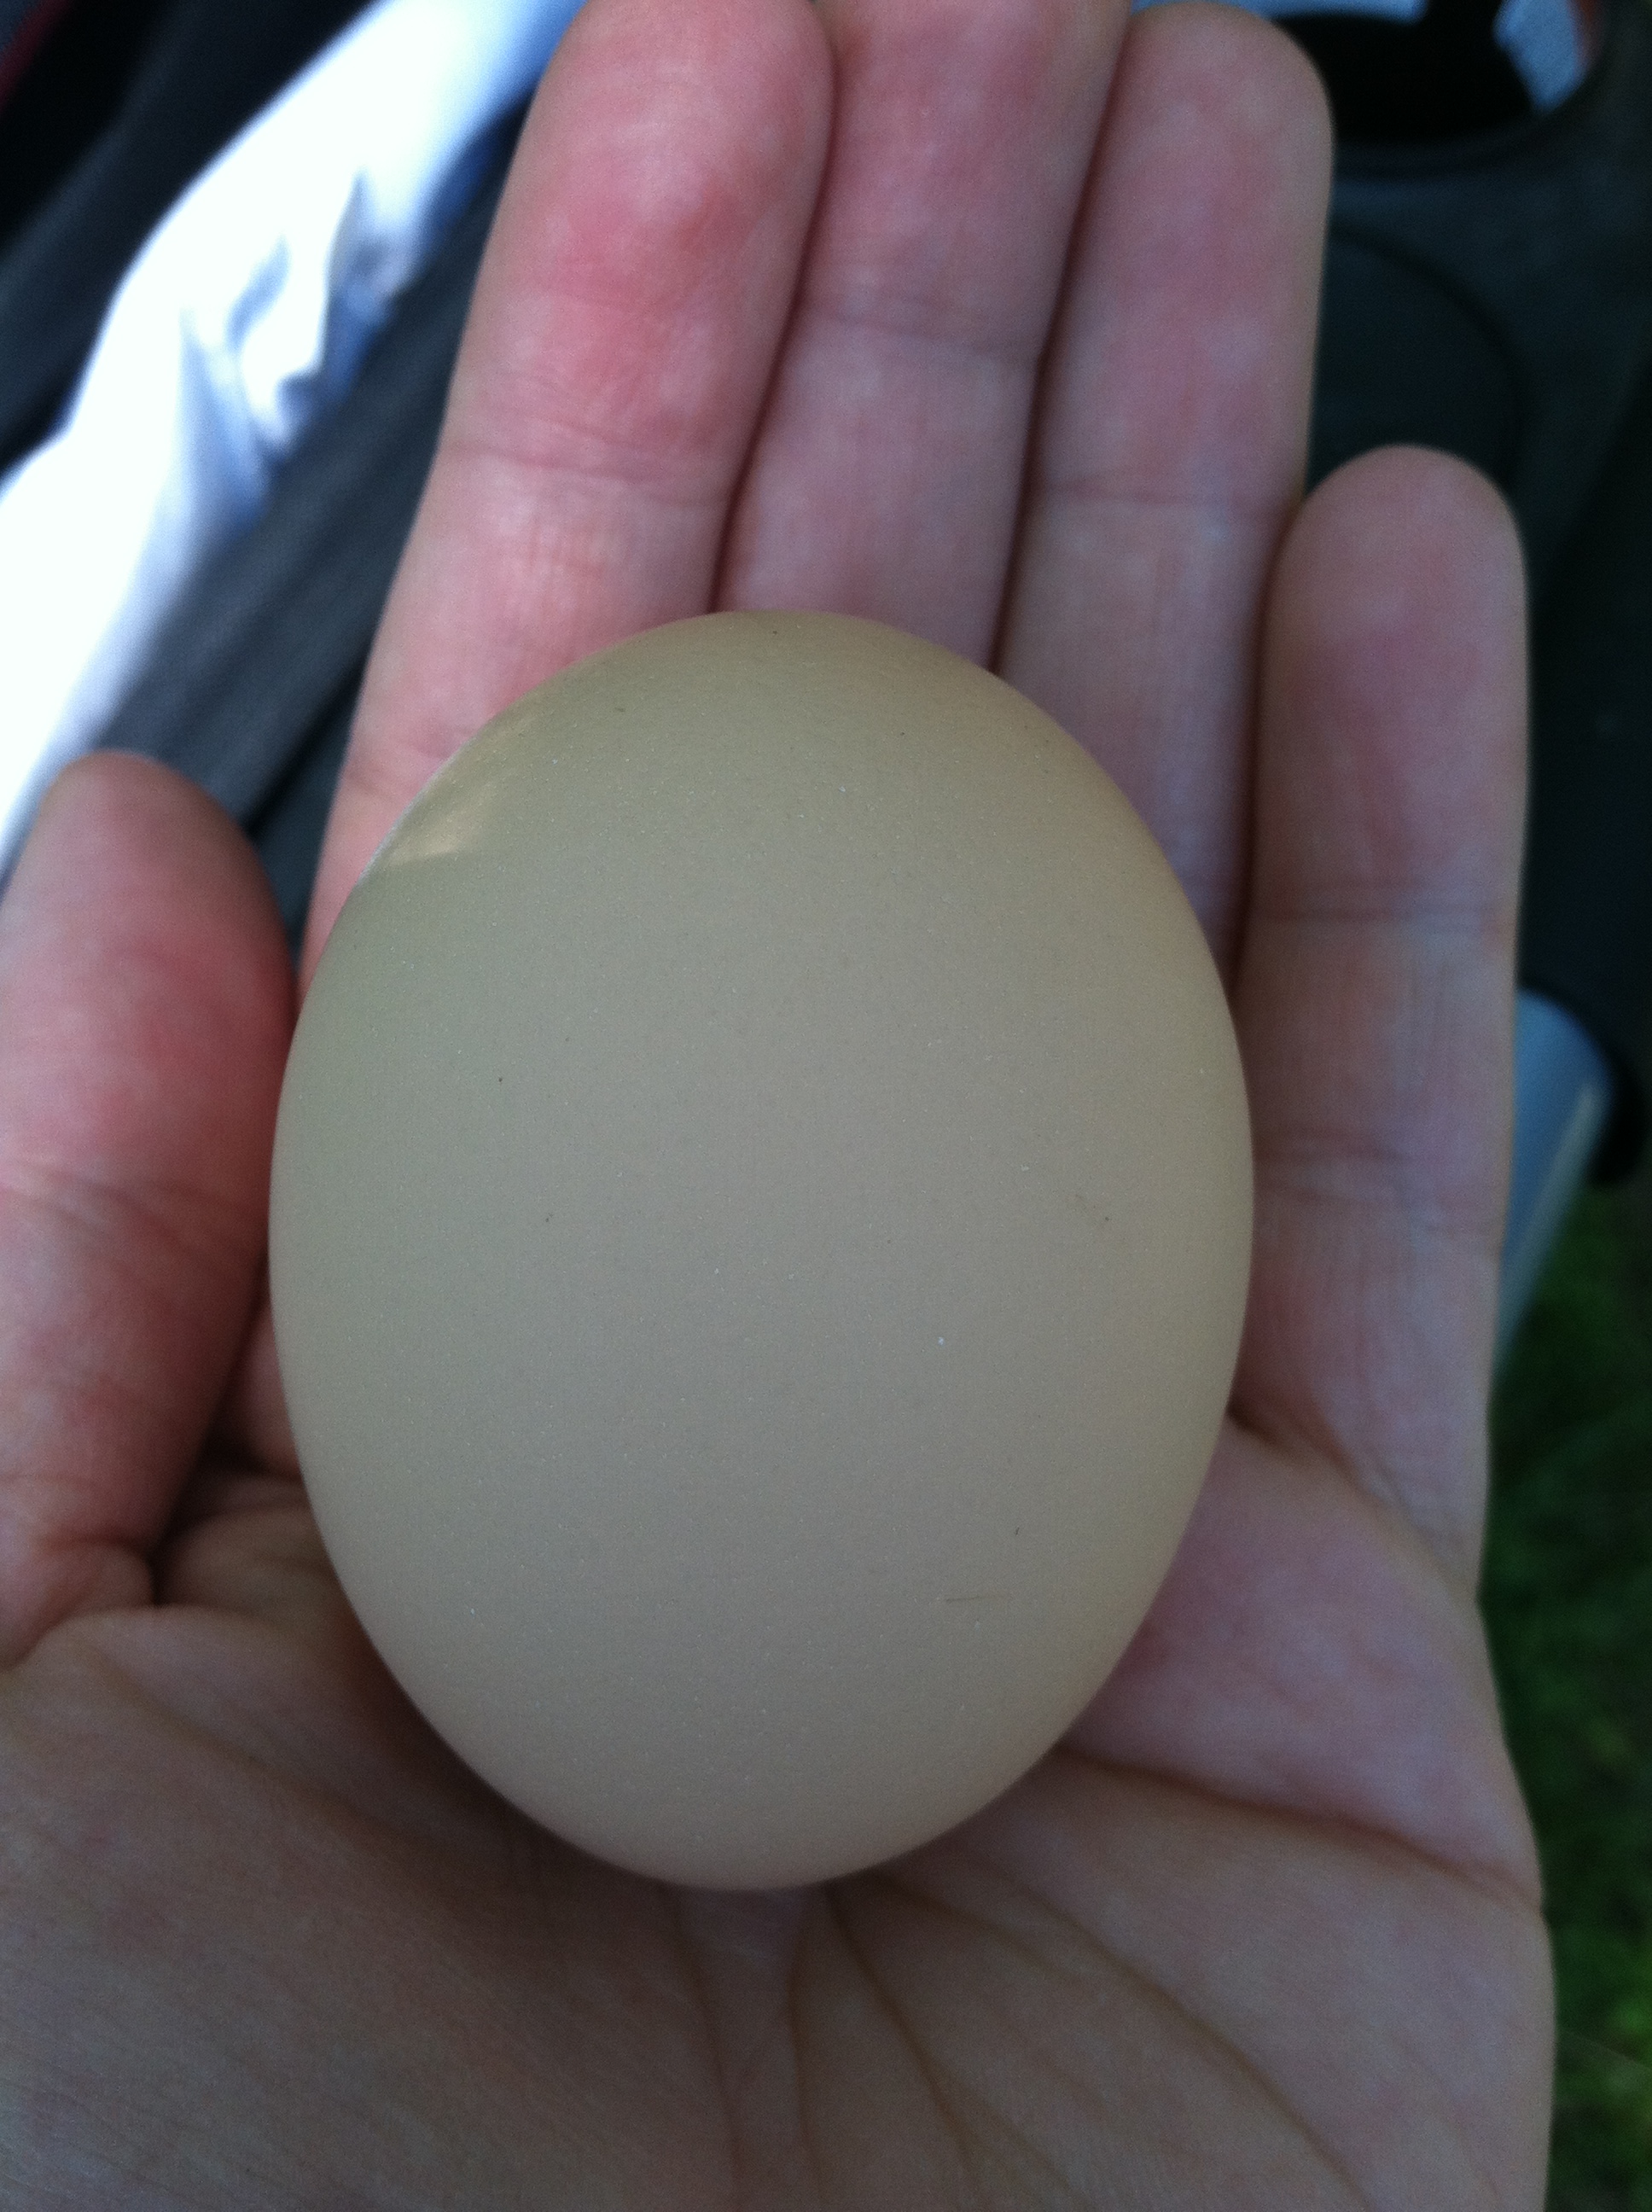 Black Australorp egg